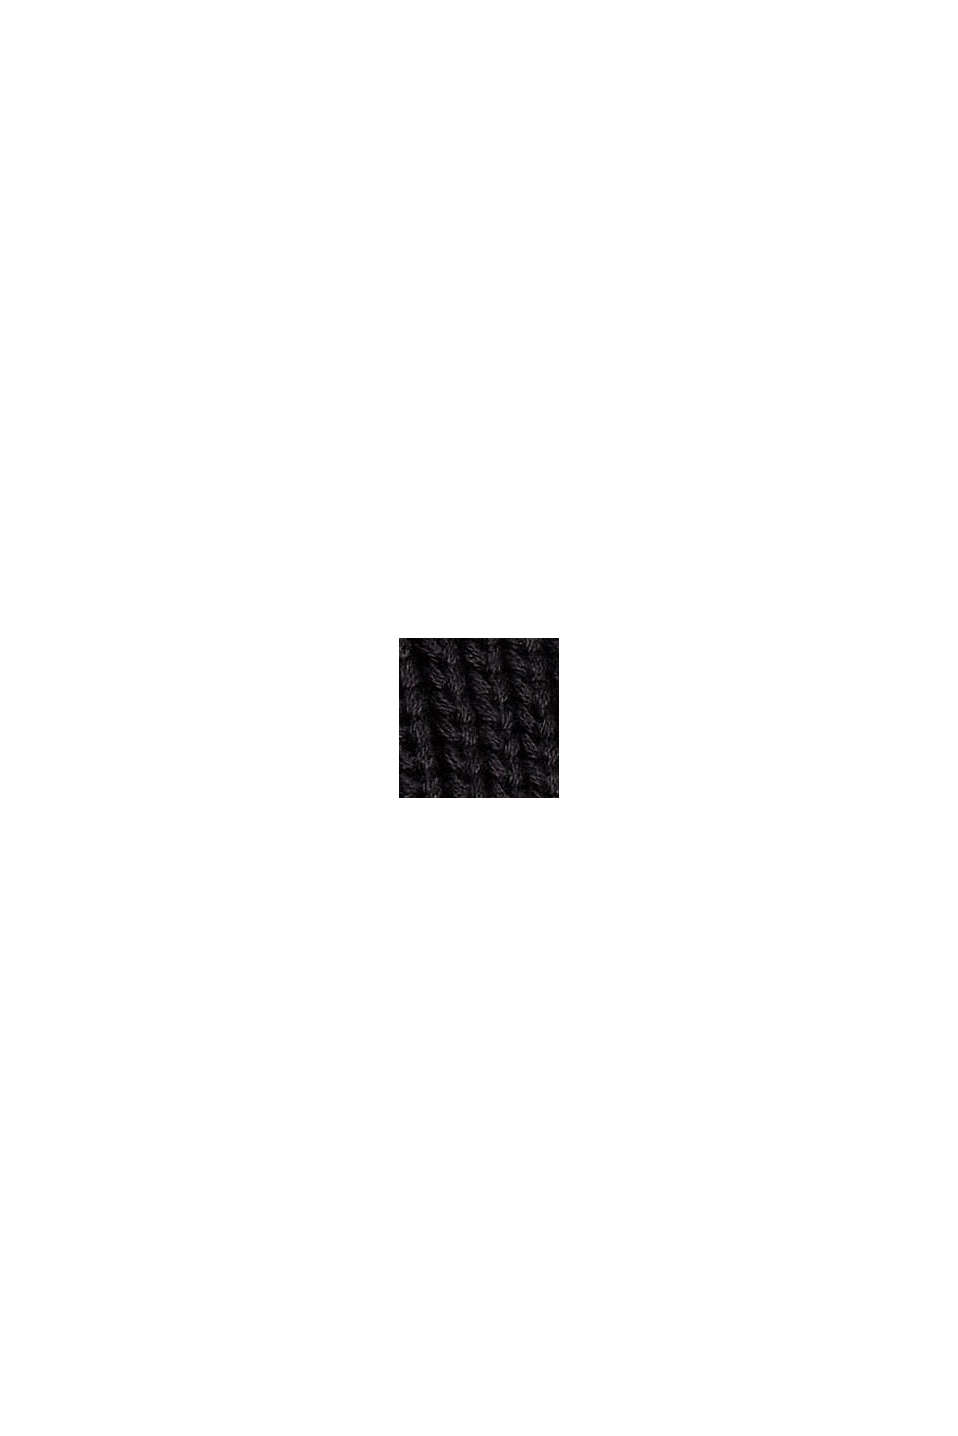 Pulovr z copánkové pleteniny, směs s bavlnou, BLACK, swatch